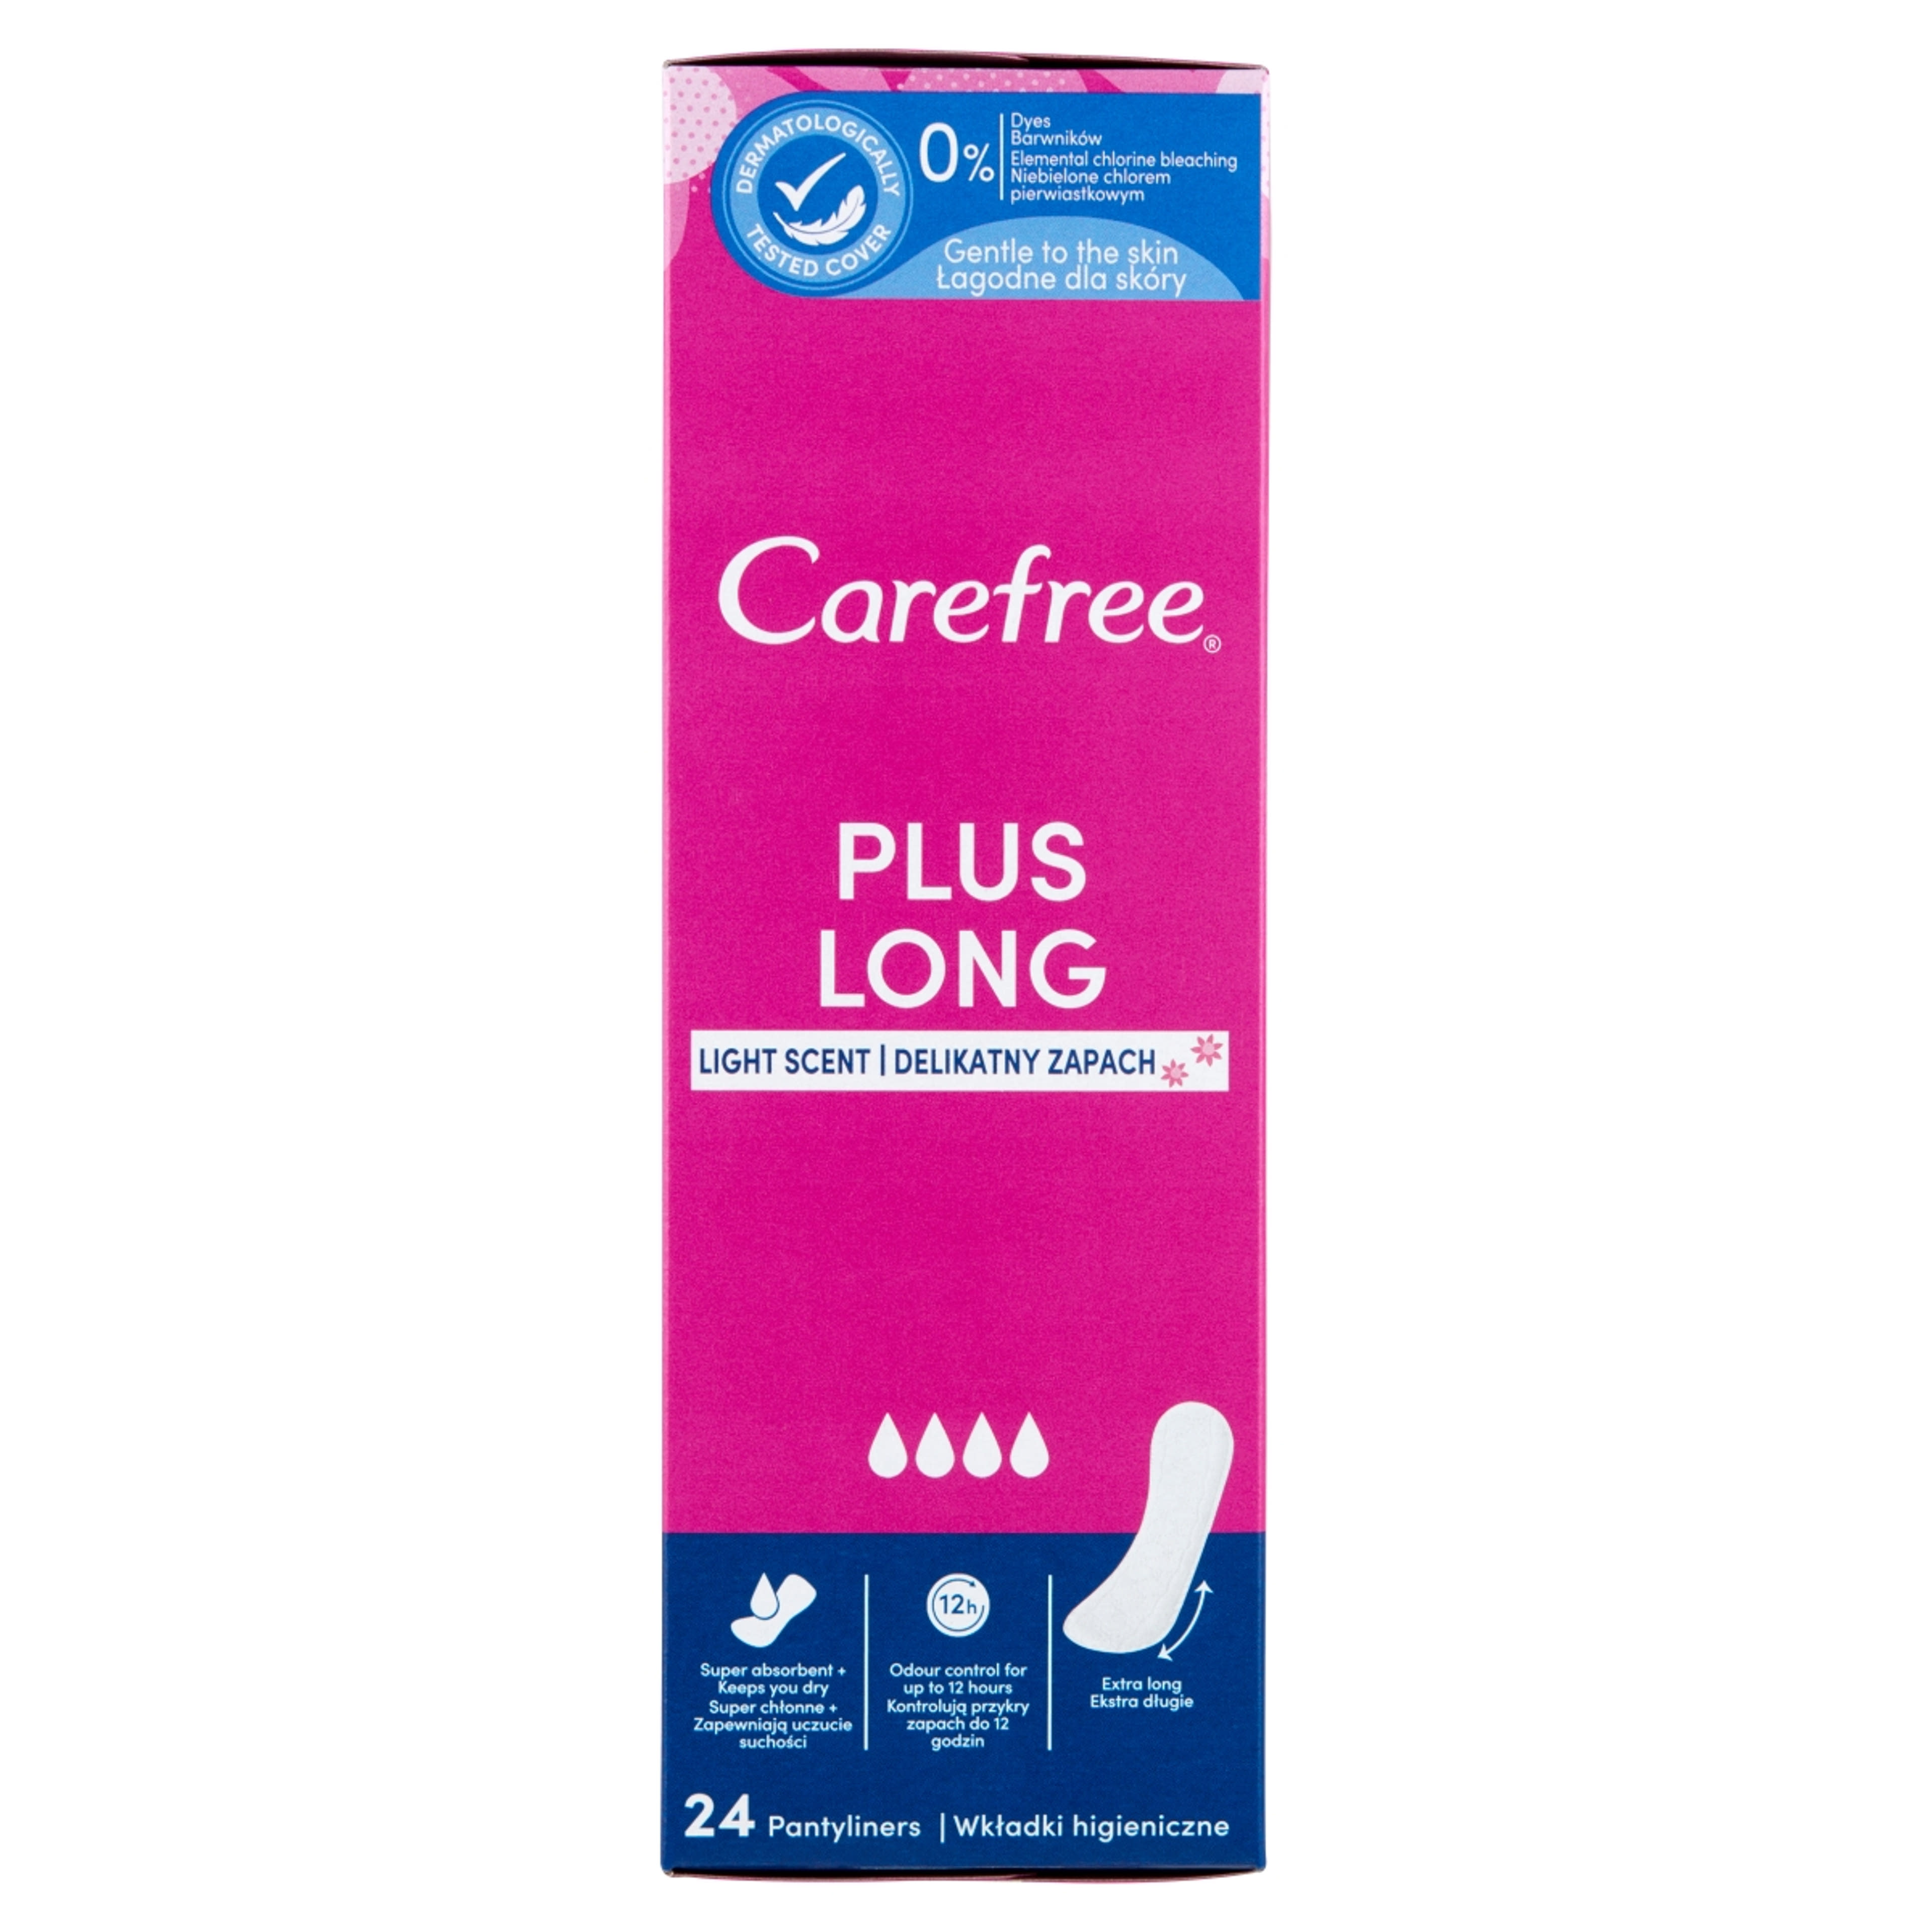 Carefree Plus Long tisztasági betét lágy illattal - 24 db